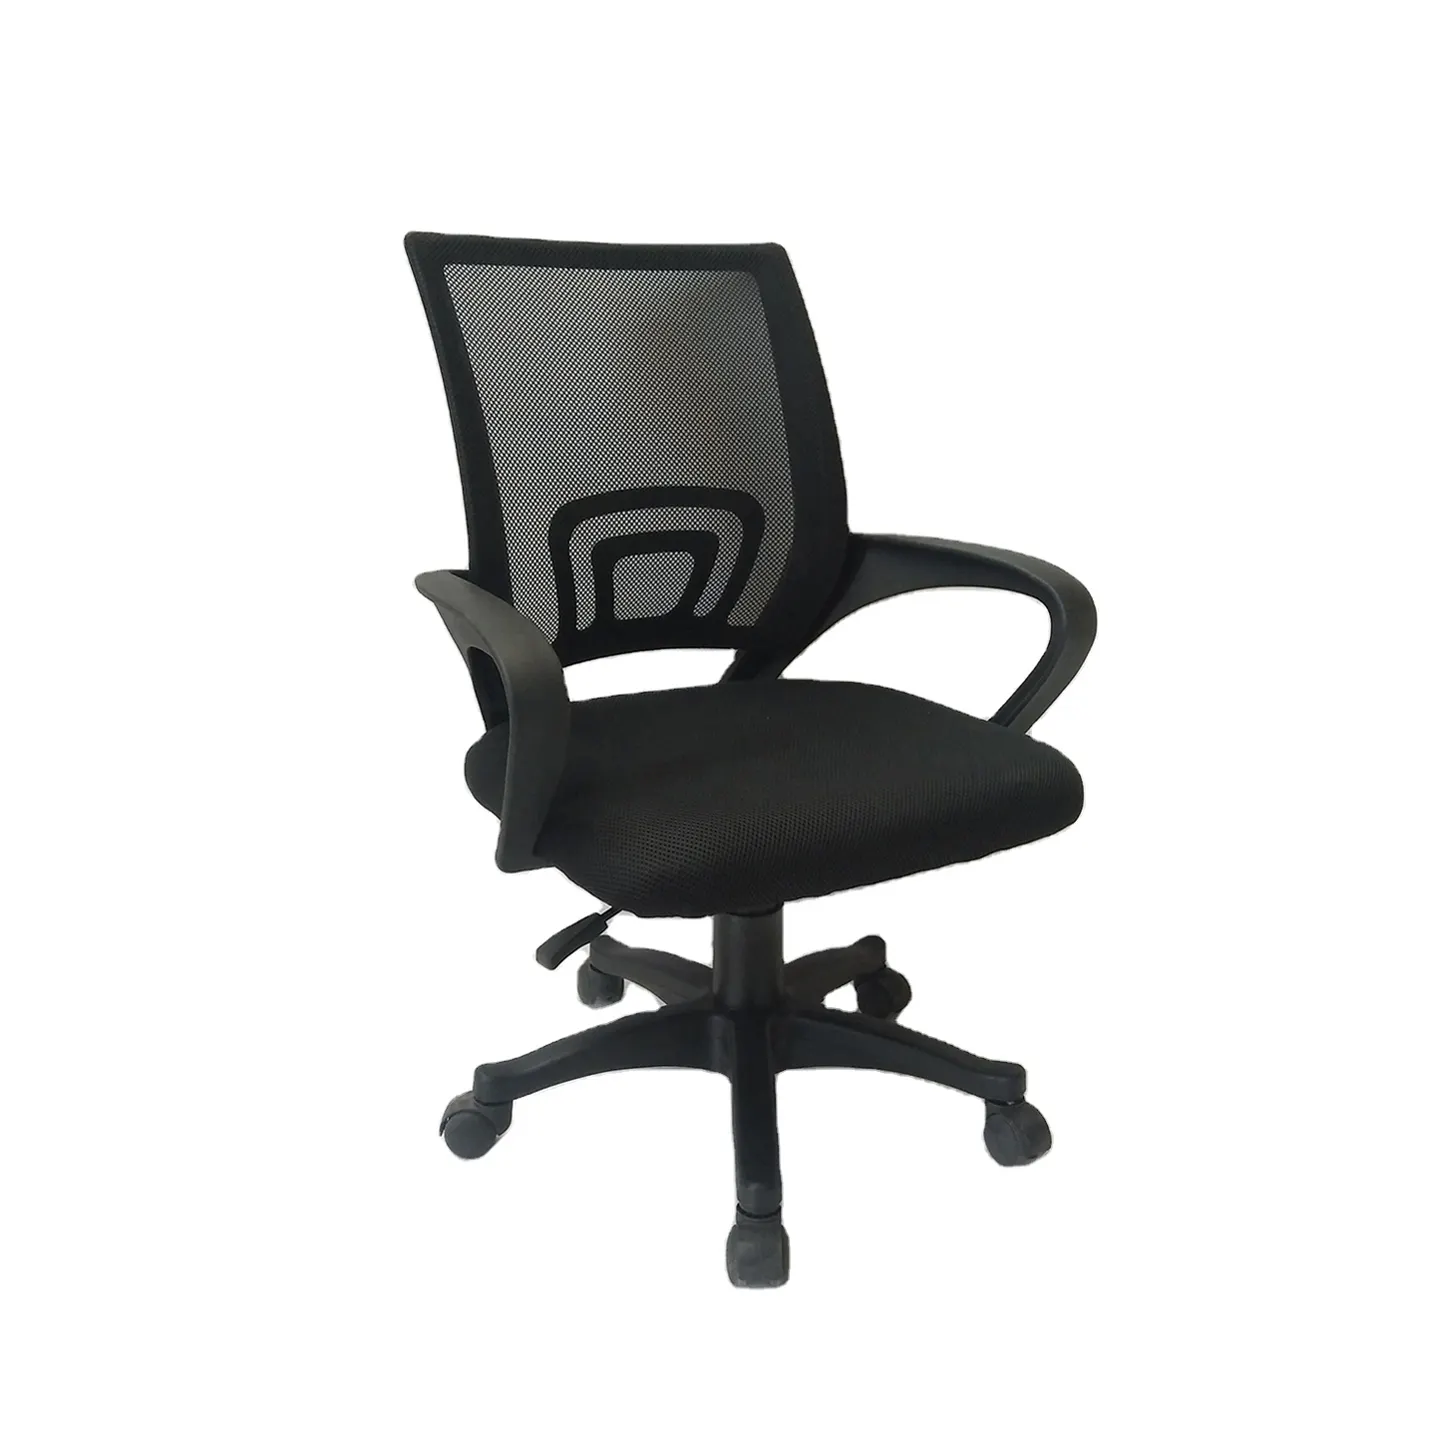 Rahat ergonomik sekreter sandalyeler örgü kumaş gaz kaldırma ofis koltuğu tekerlekli